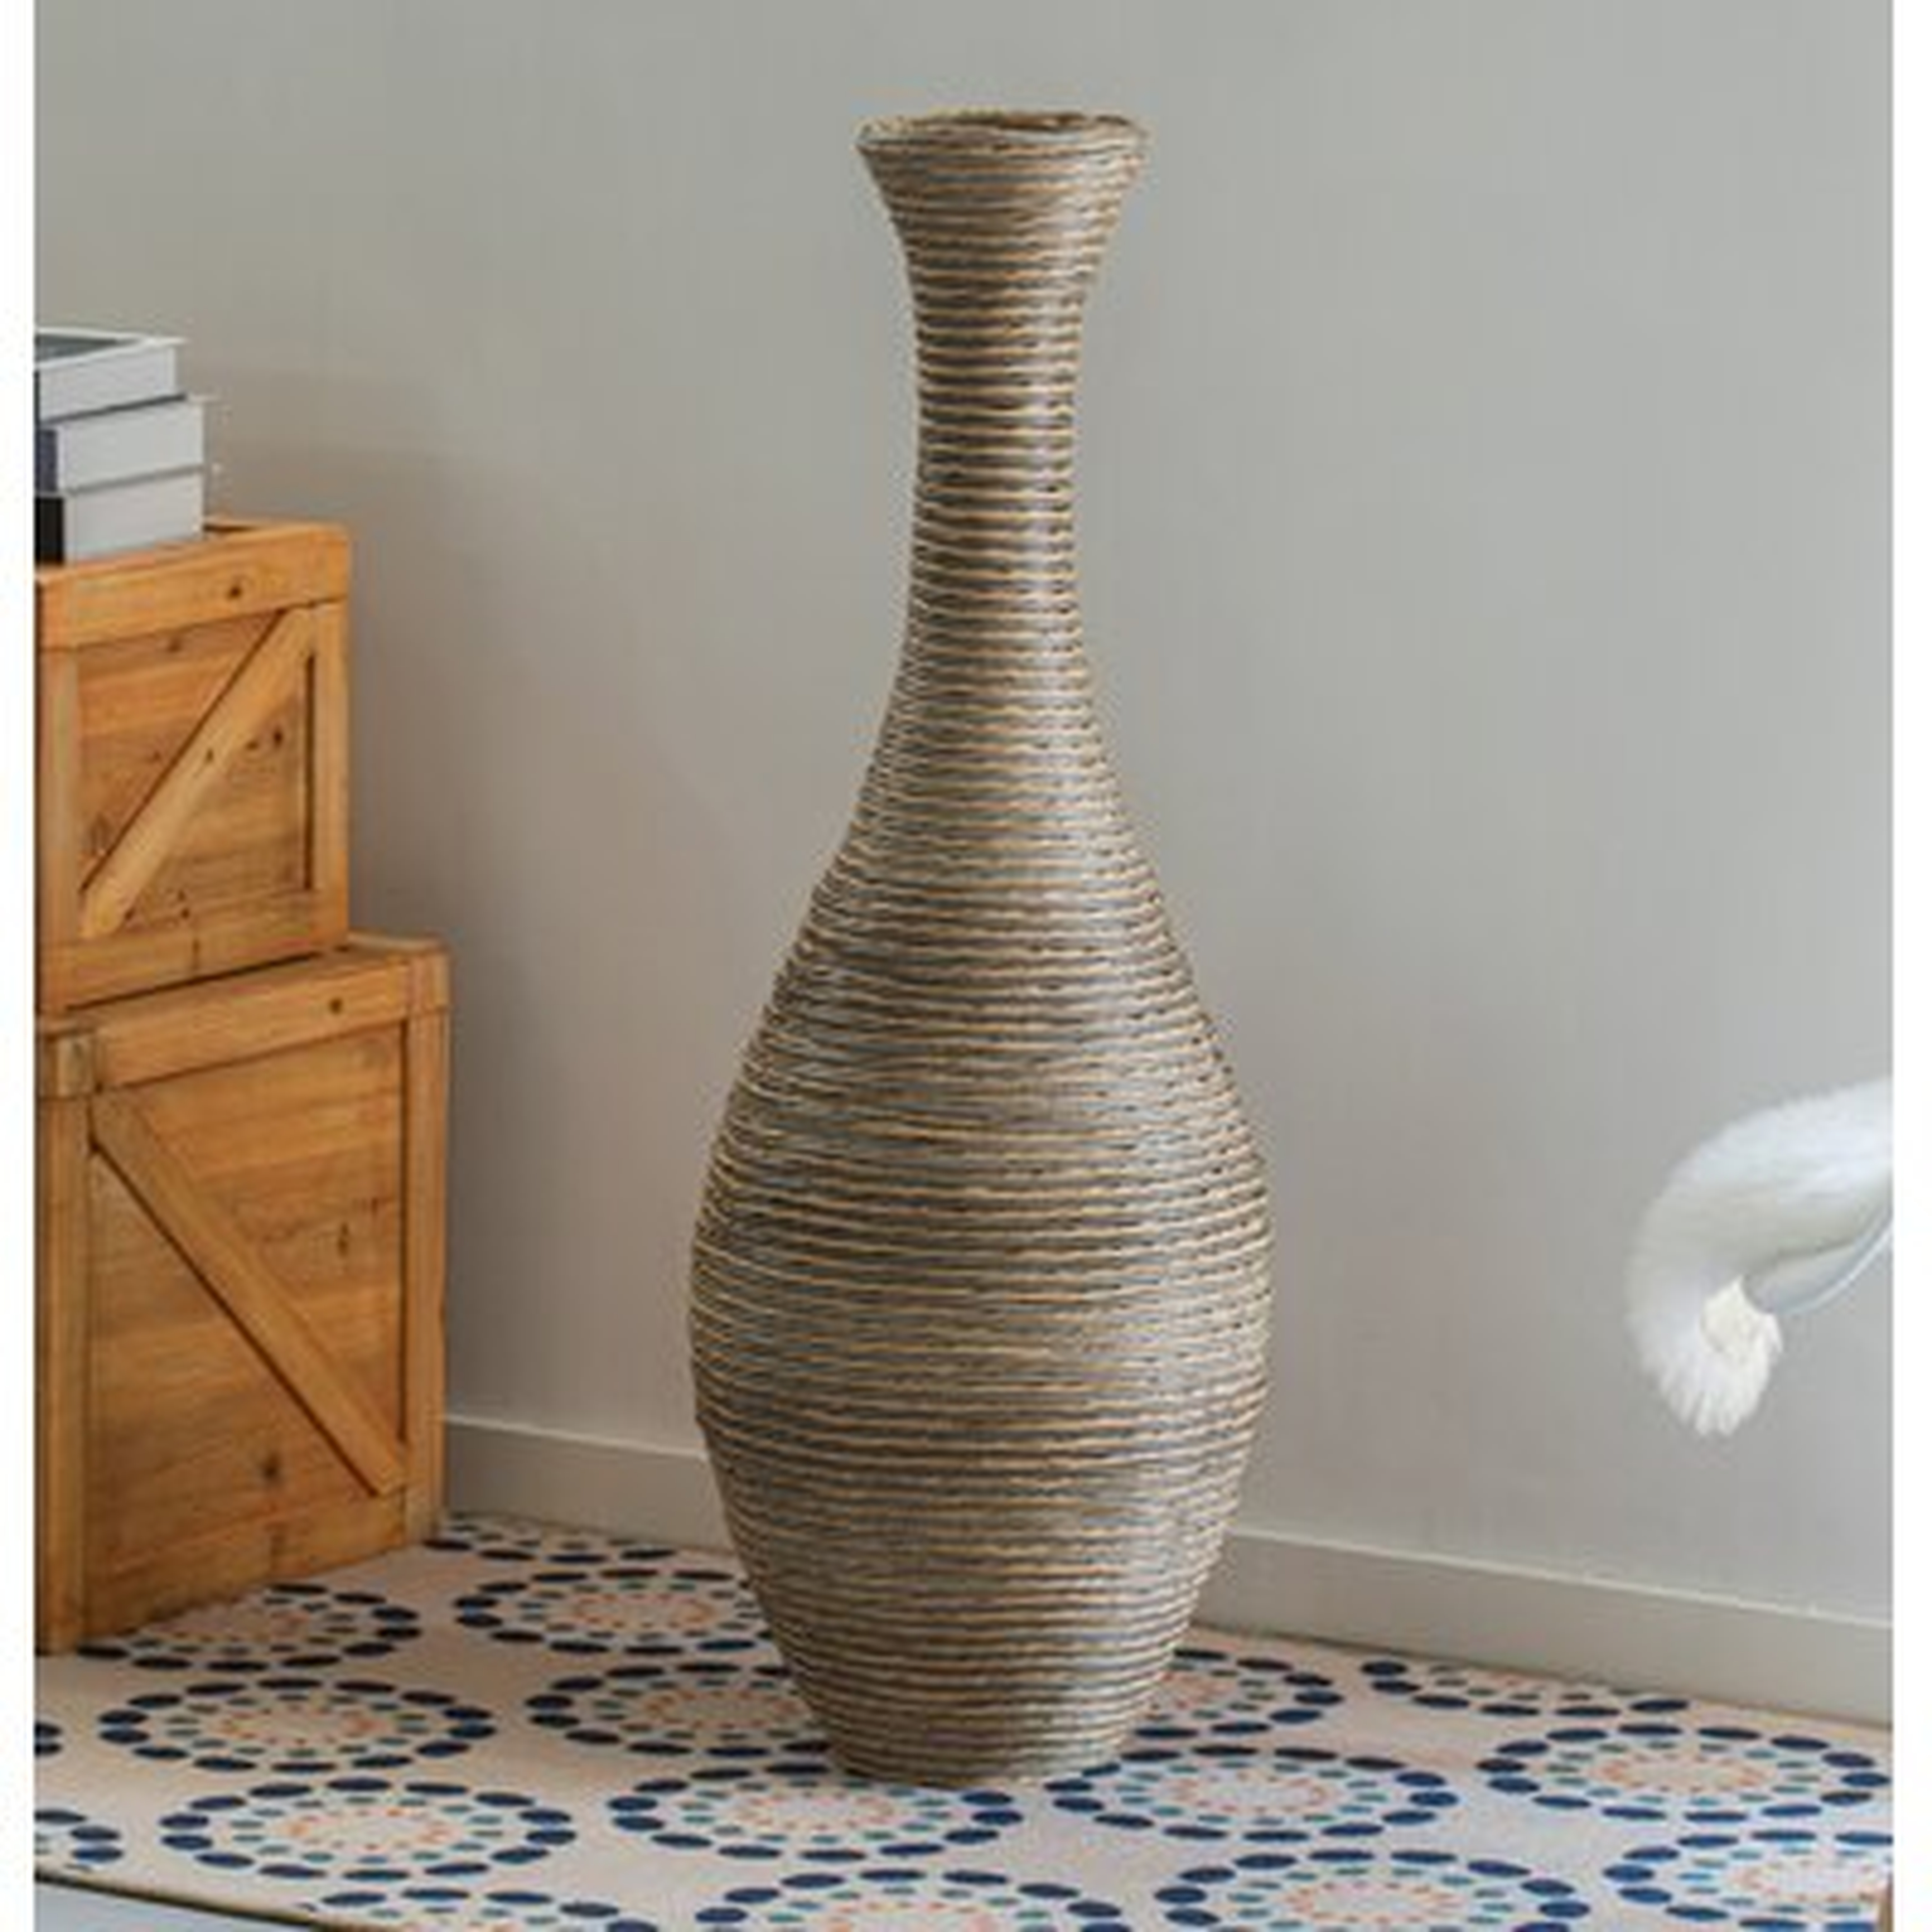 Alburnett Beige 37.75" Wood Floor Vase - Wayfair